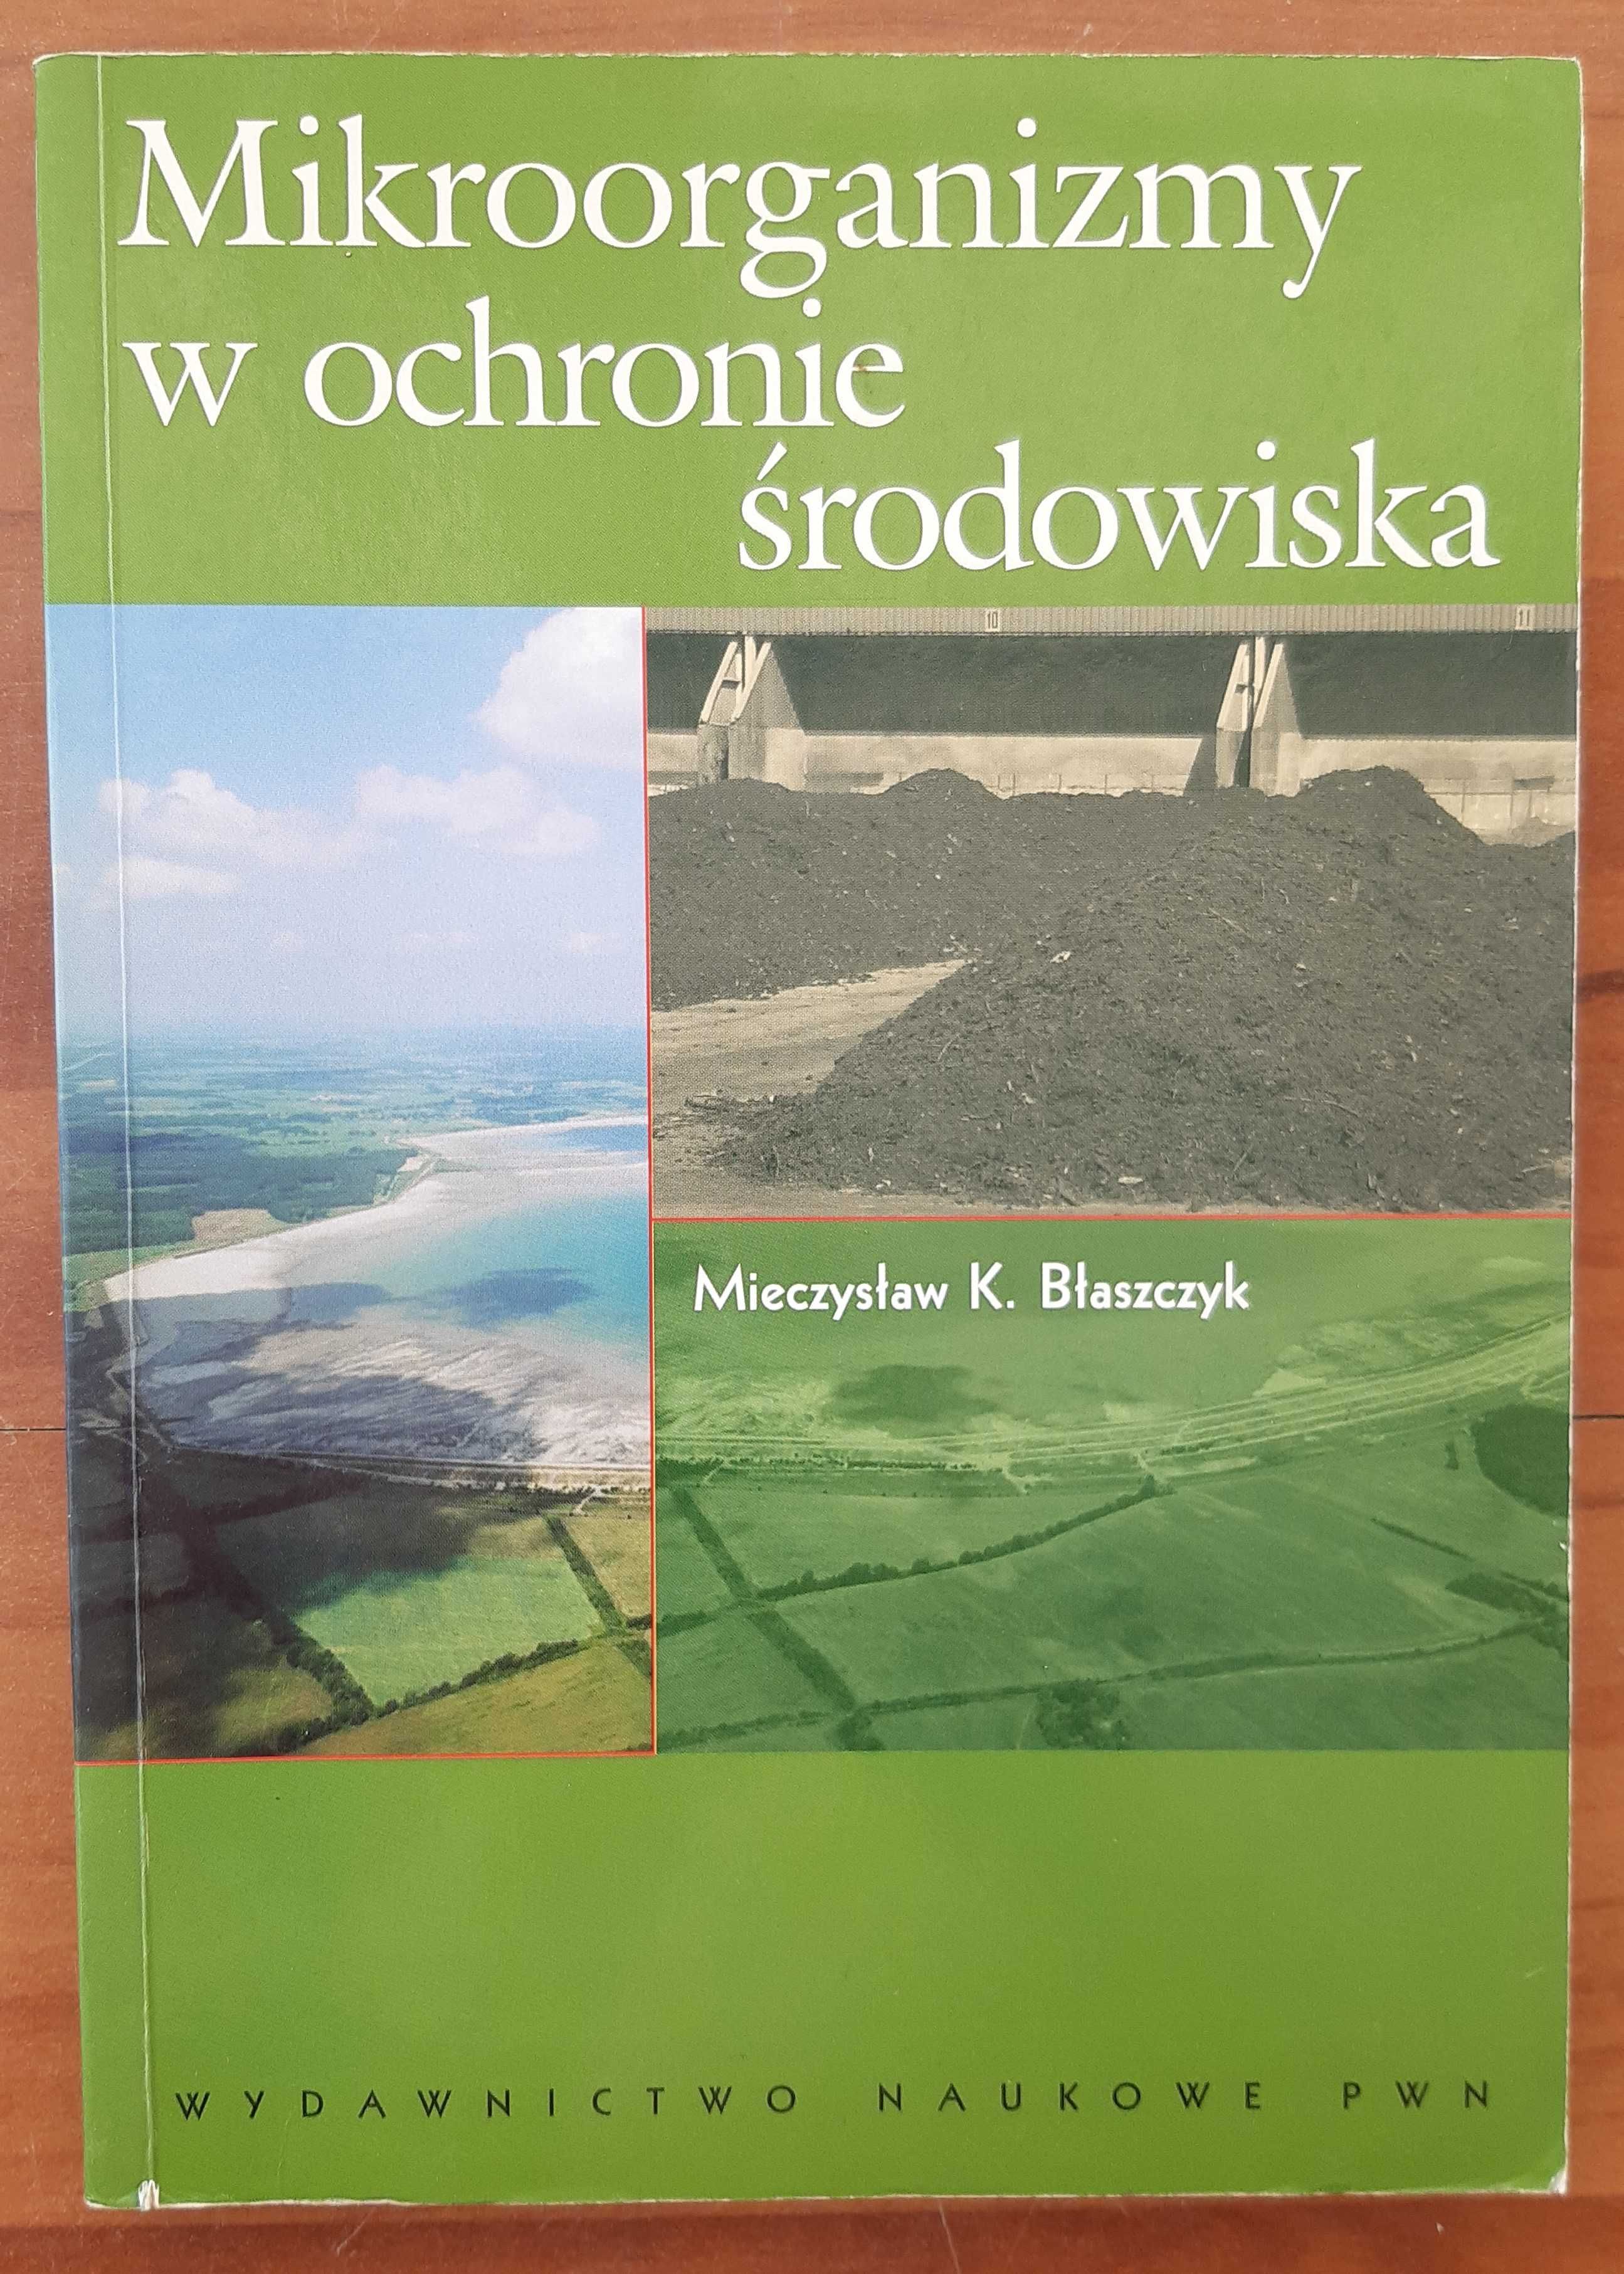 Mieczysław K. Błaszczyk – Mikroorganizmy w Ochronie Środowiska